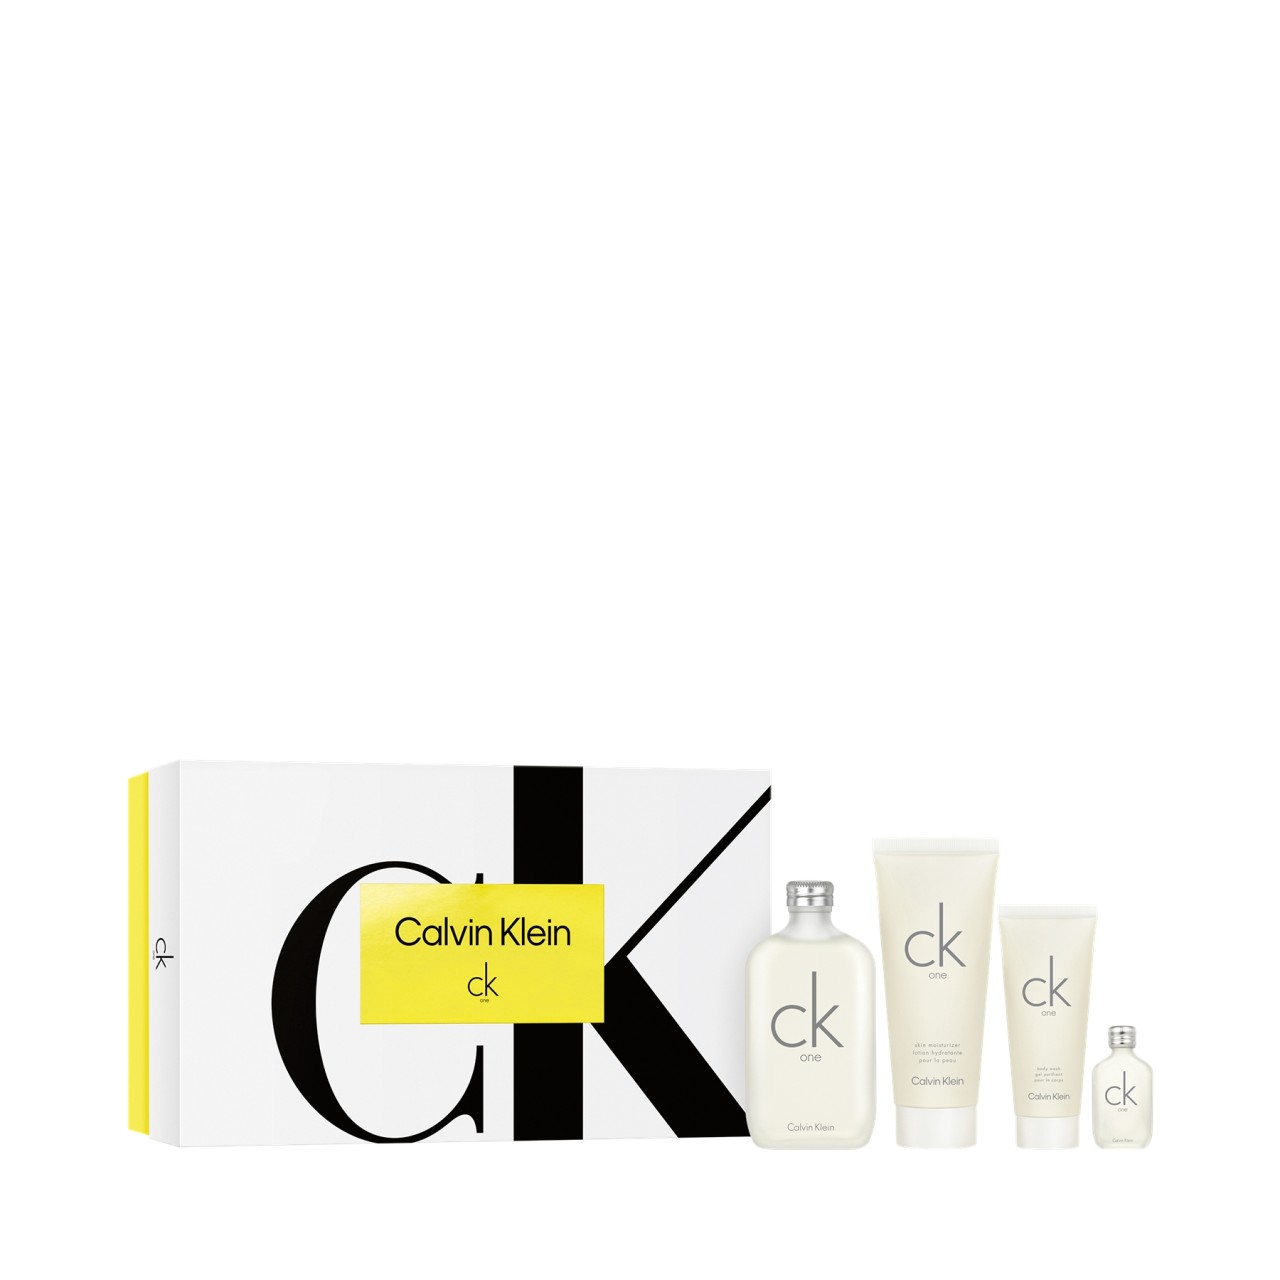 Calvin Klein - Ck One Edt Spray 200 Ml Set - 